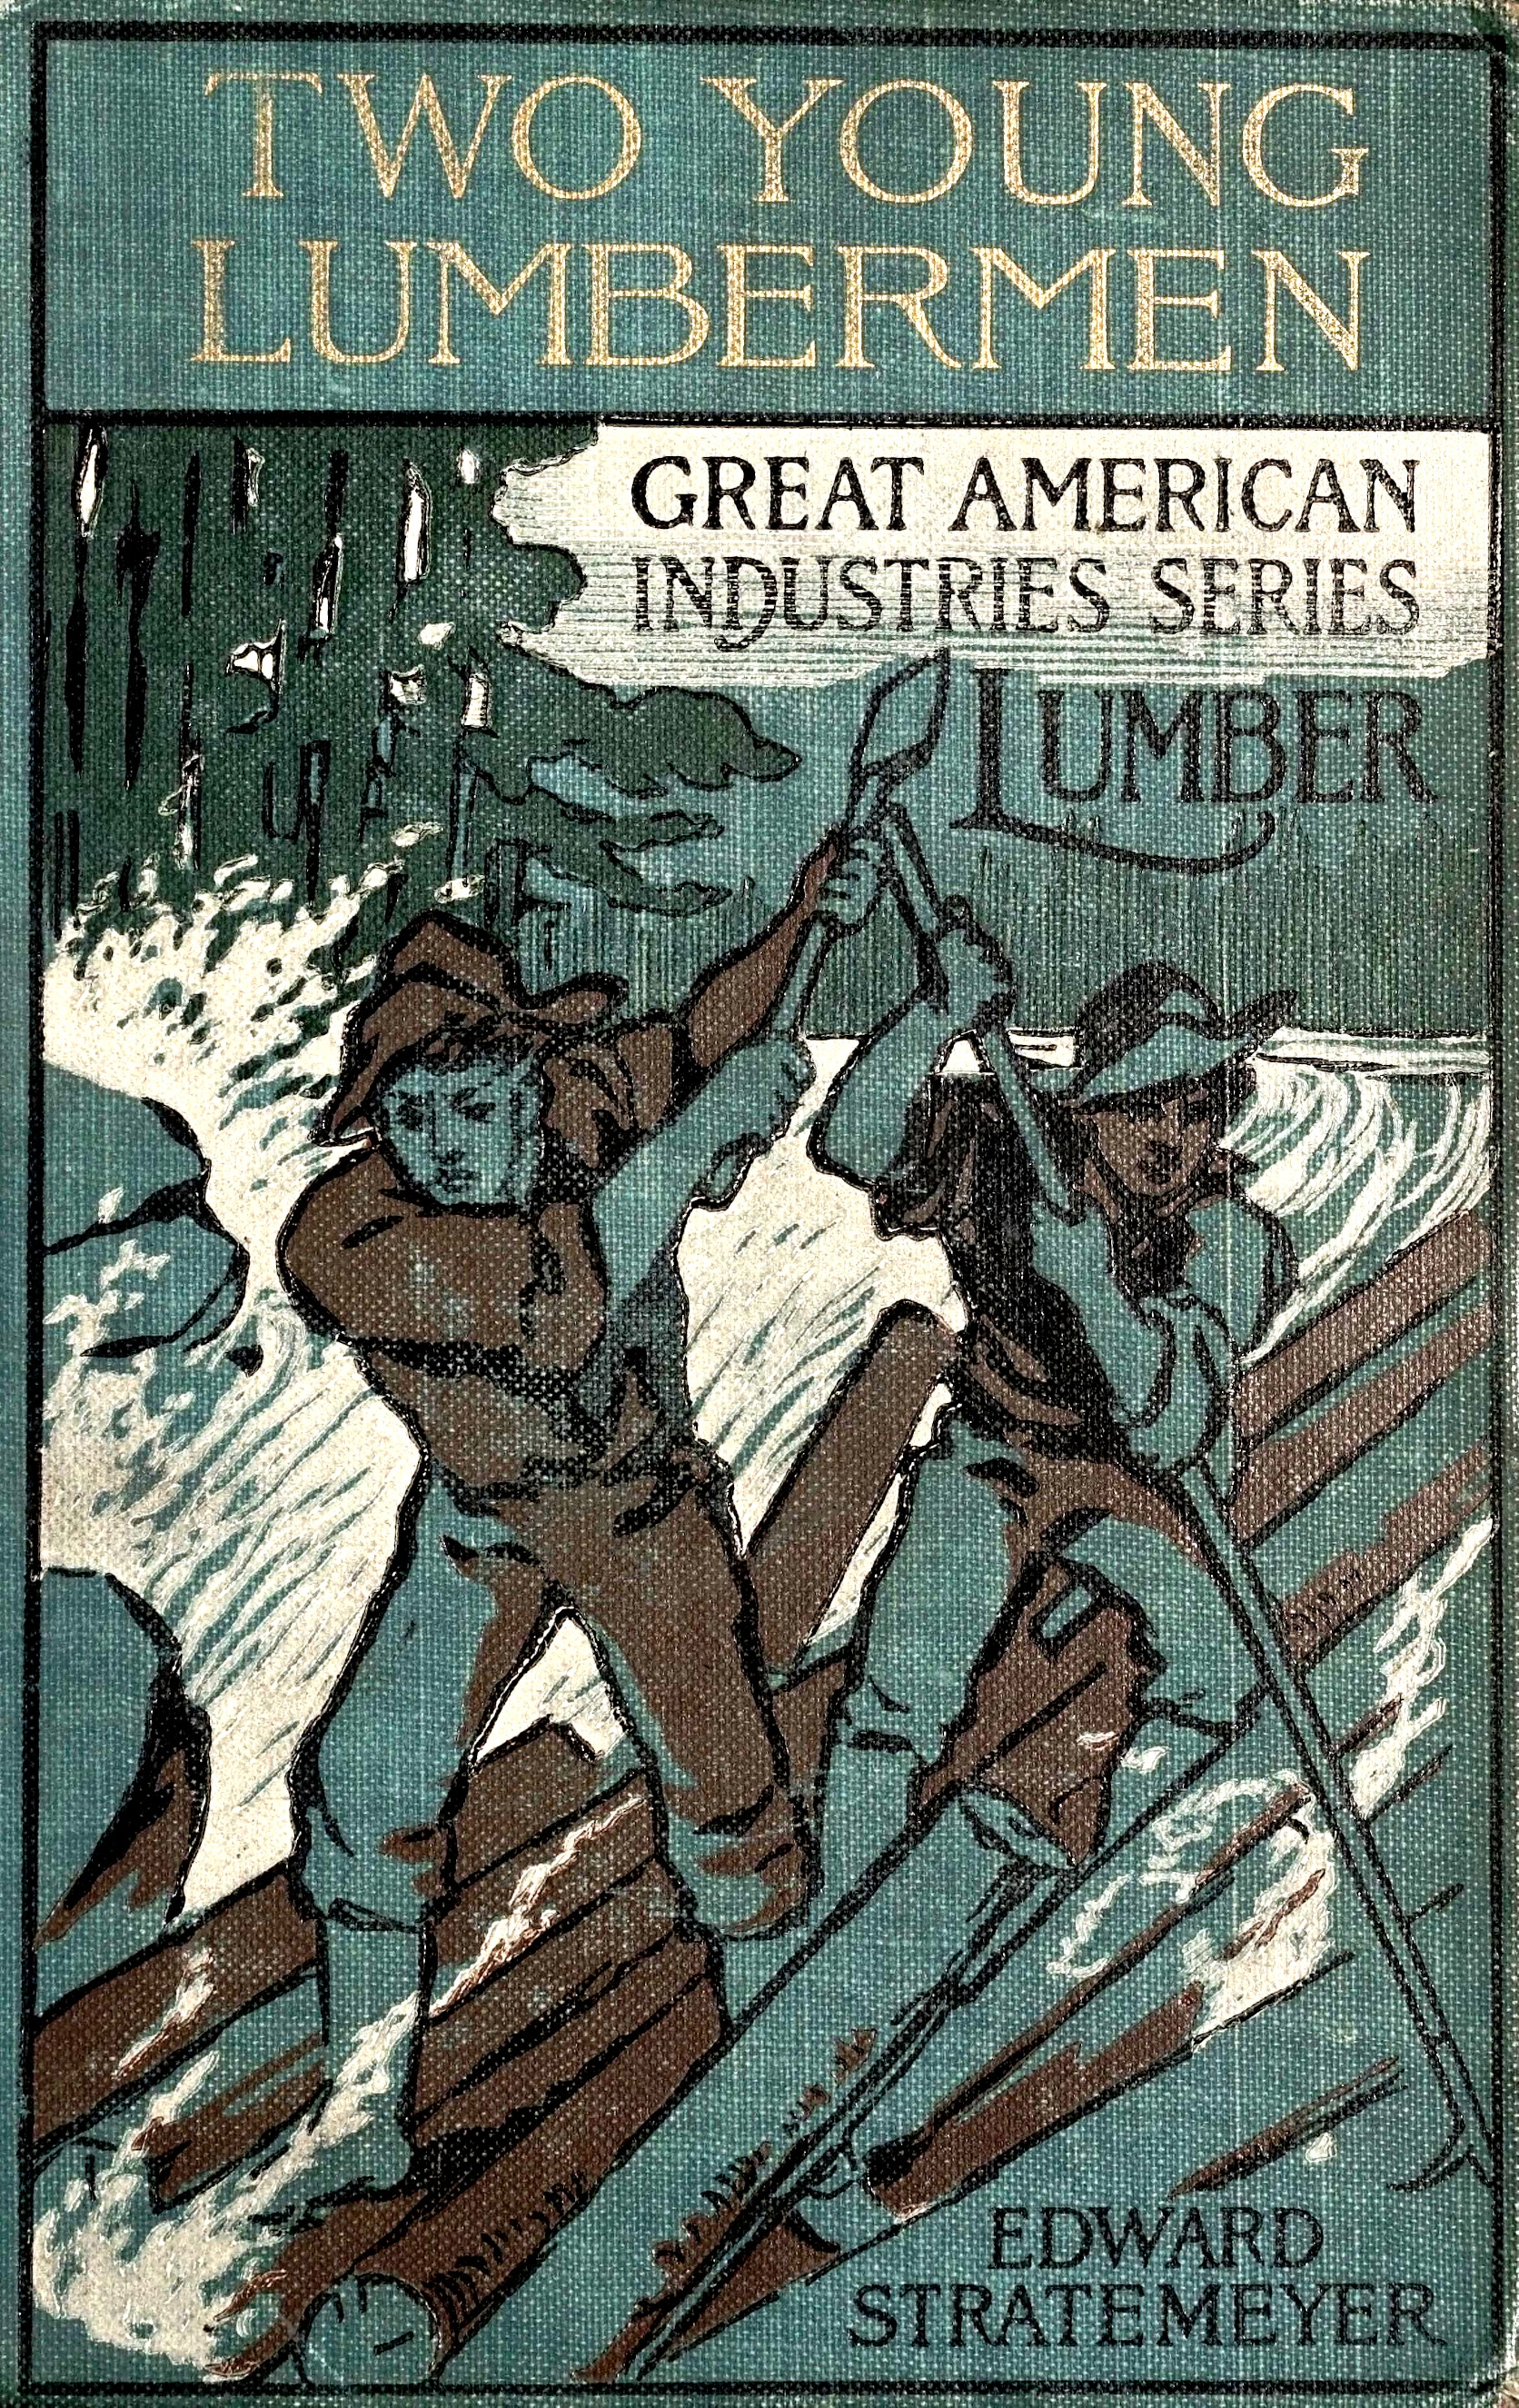 Two young lumbermen